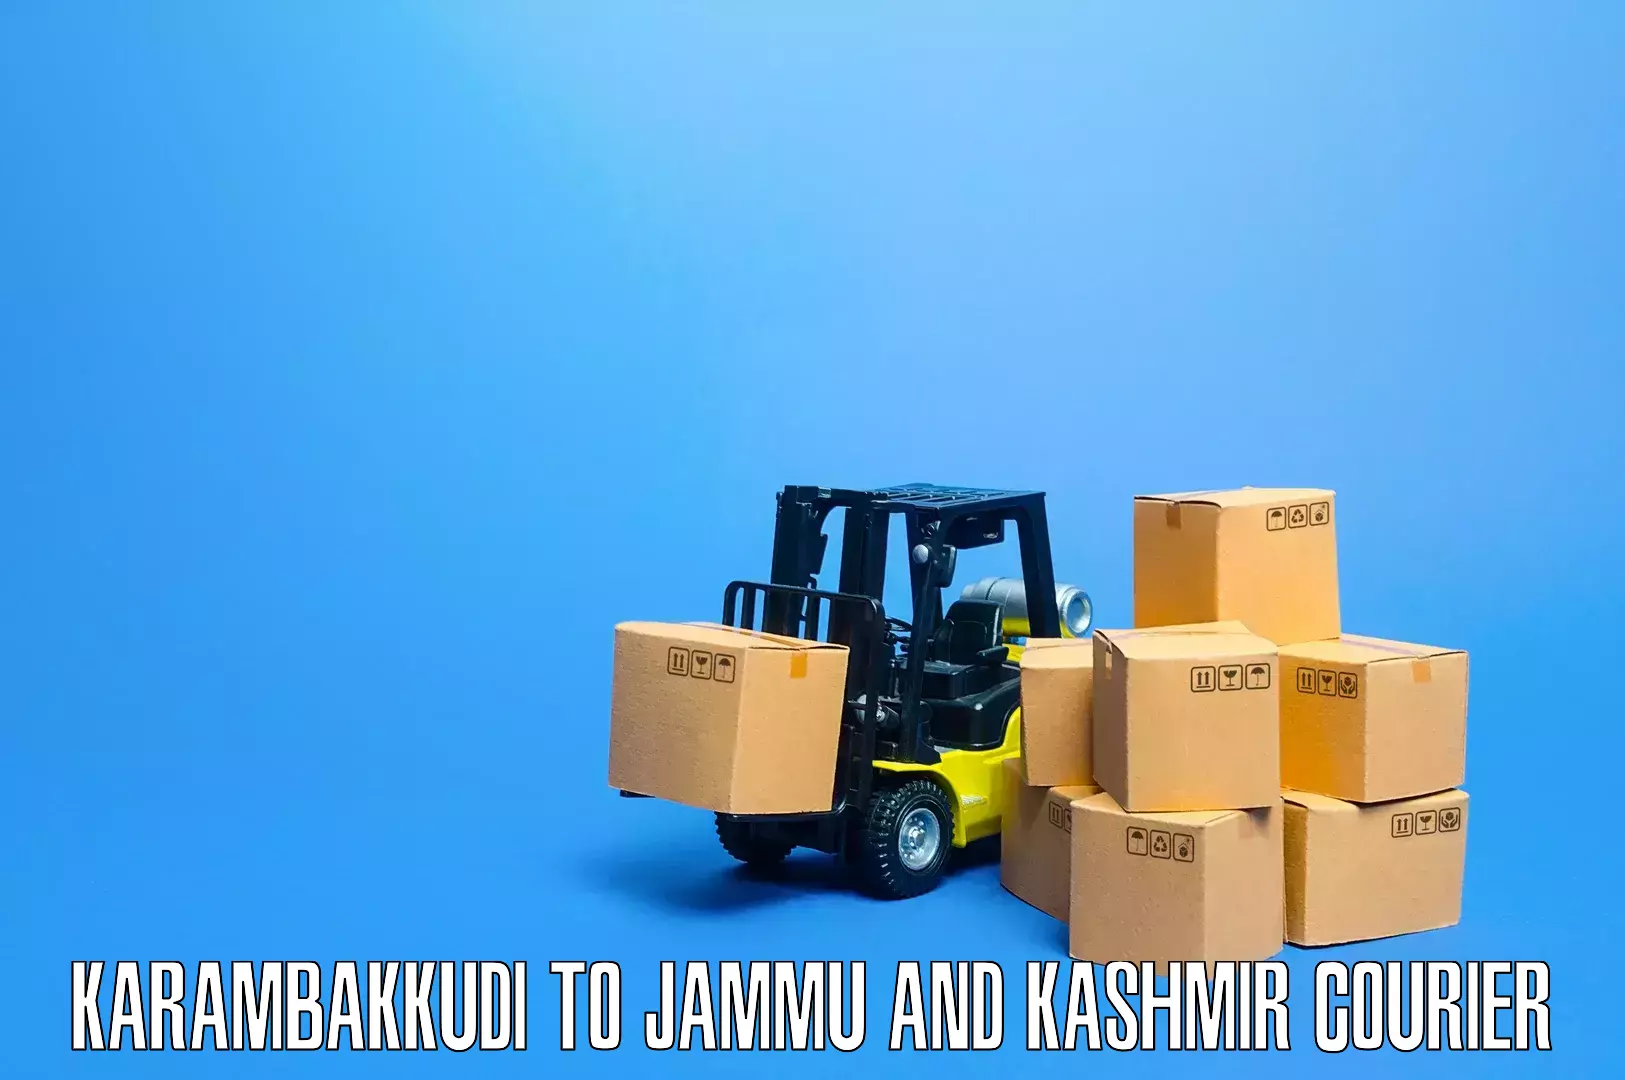 Professional packing services Karambakkudi to Doda